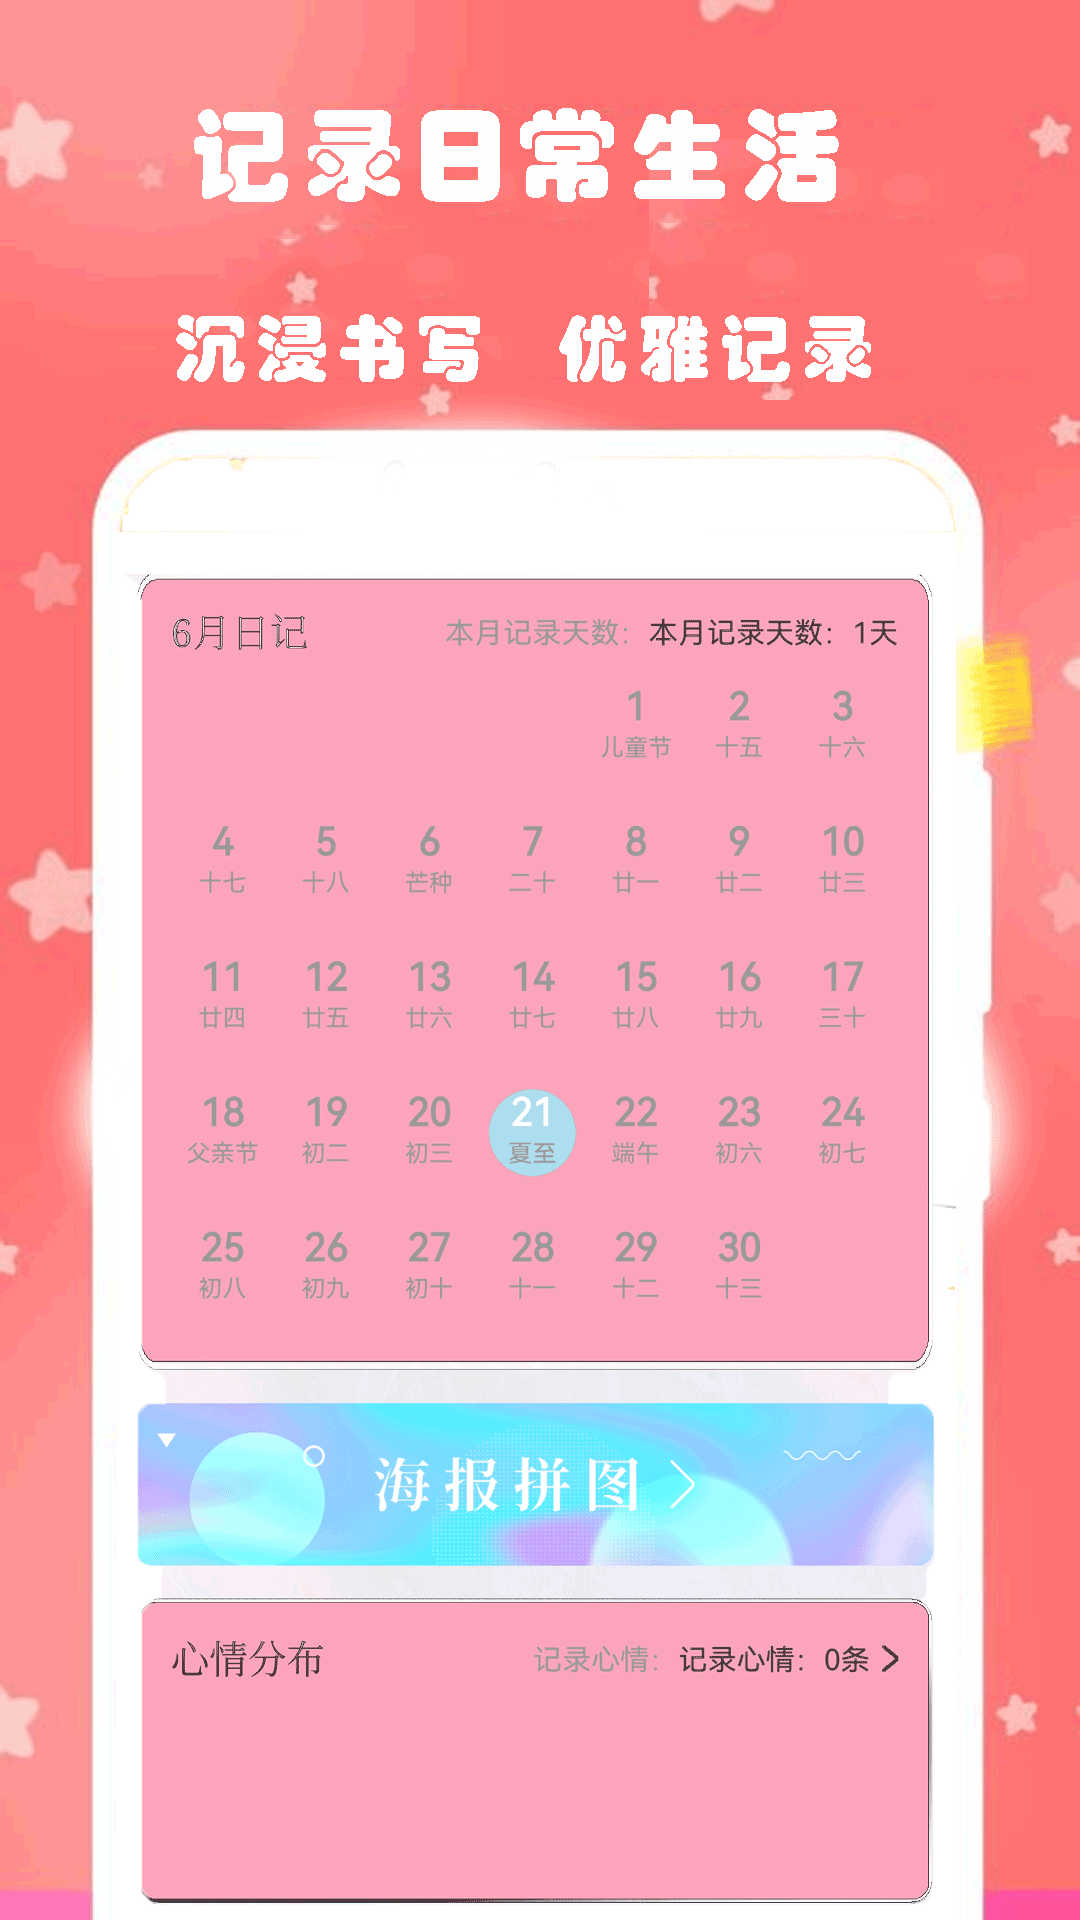 心动恋爱日常日记app下载,心动恋爱日常日记app官方版 v1.2